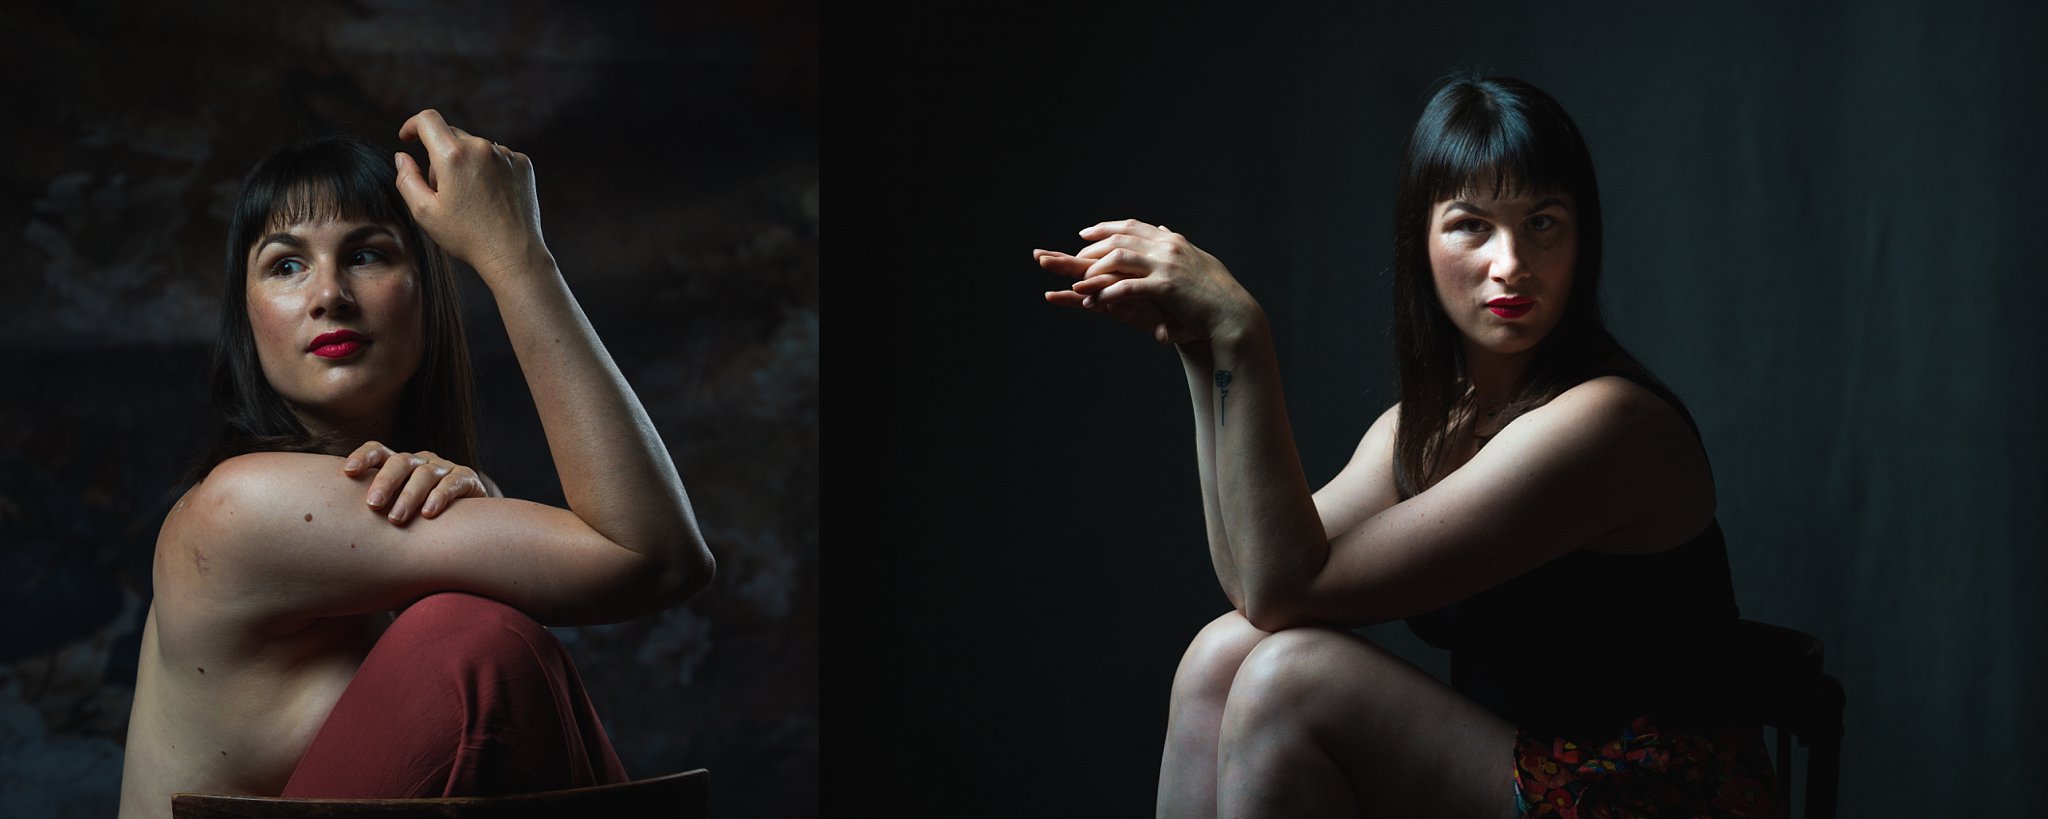 deux portrairs d'une femme qui pose assise les bras relevé lors d'une seance estime de soi